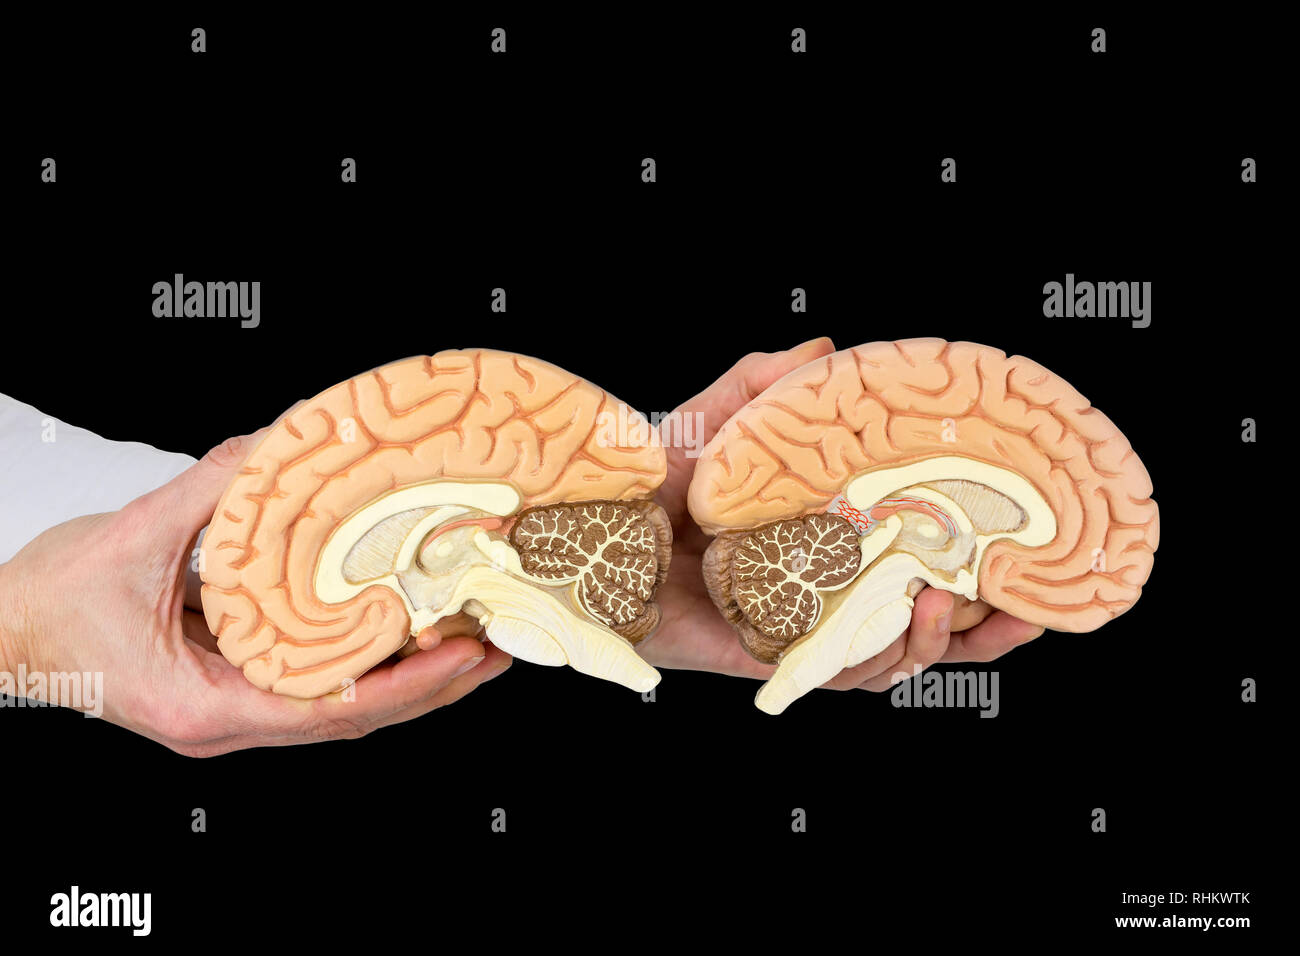 Mani tenendo i modelli umani emisferi cerebrali isolati su sfondo nero Foto Stock